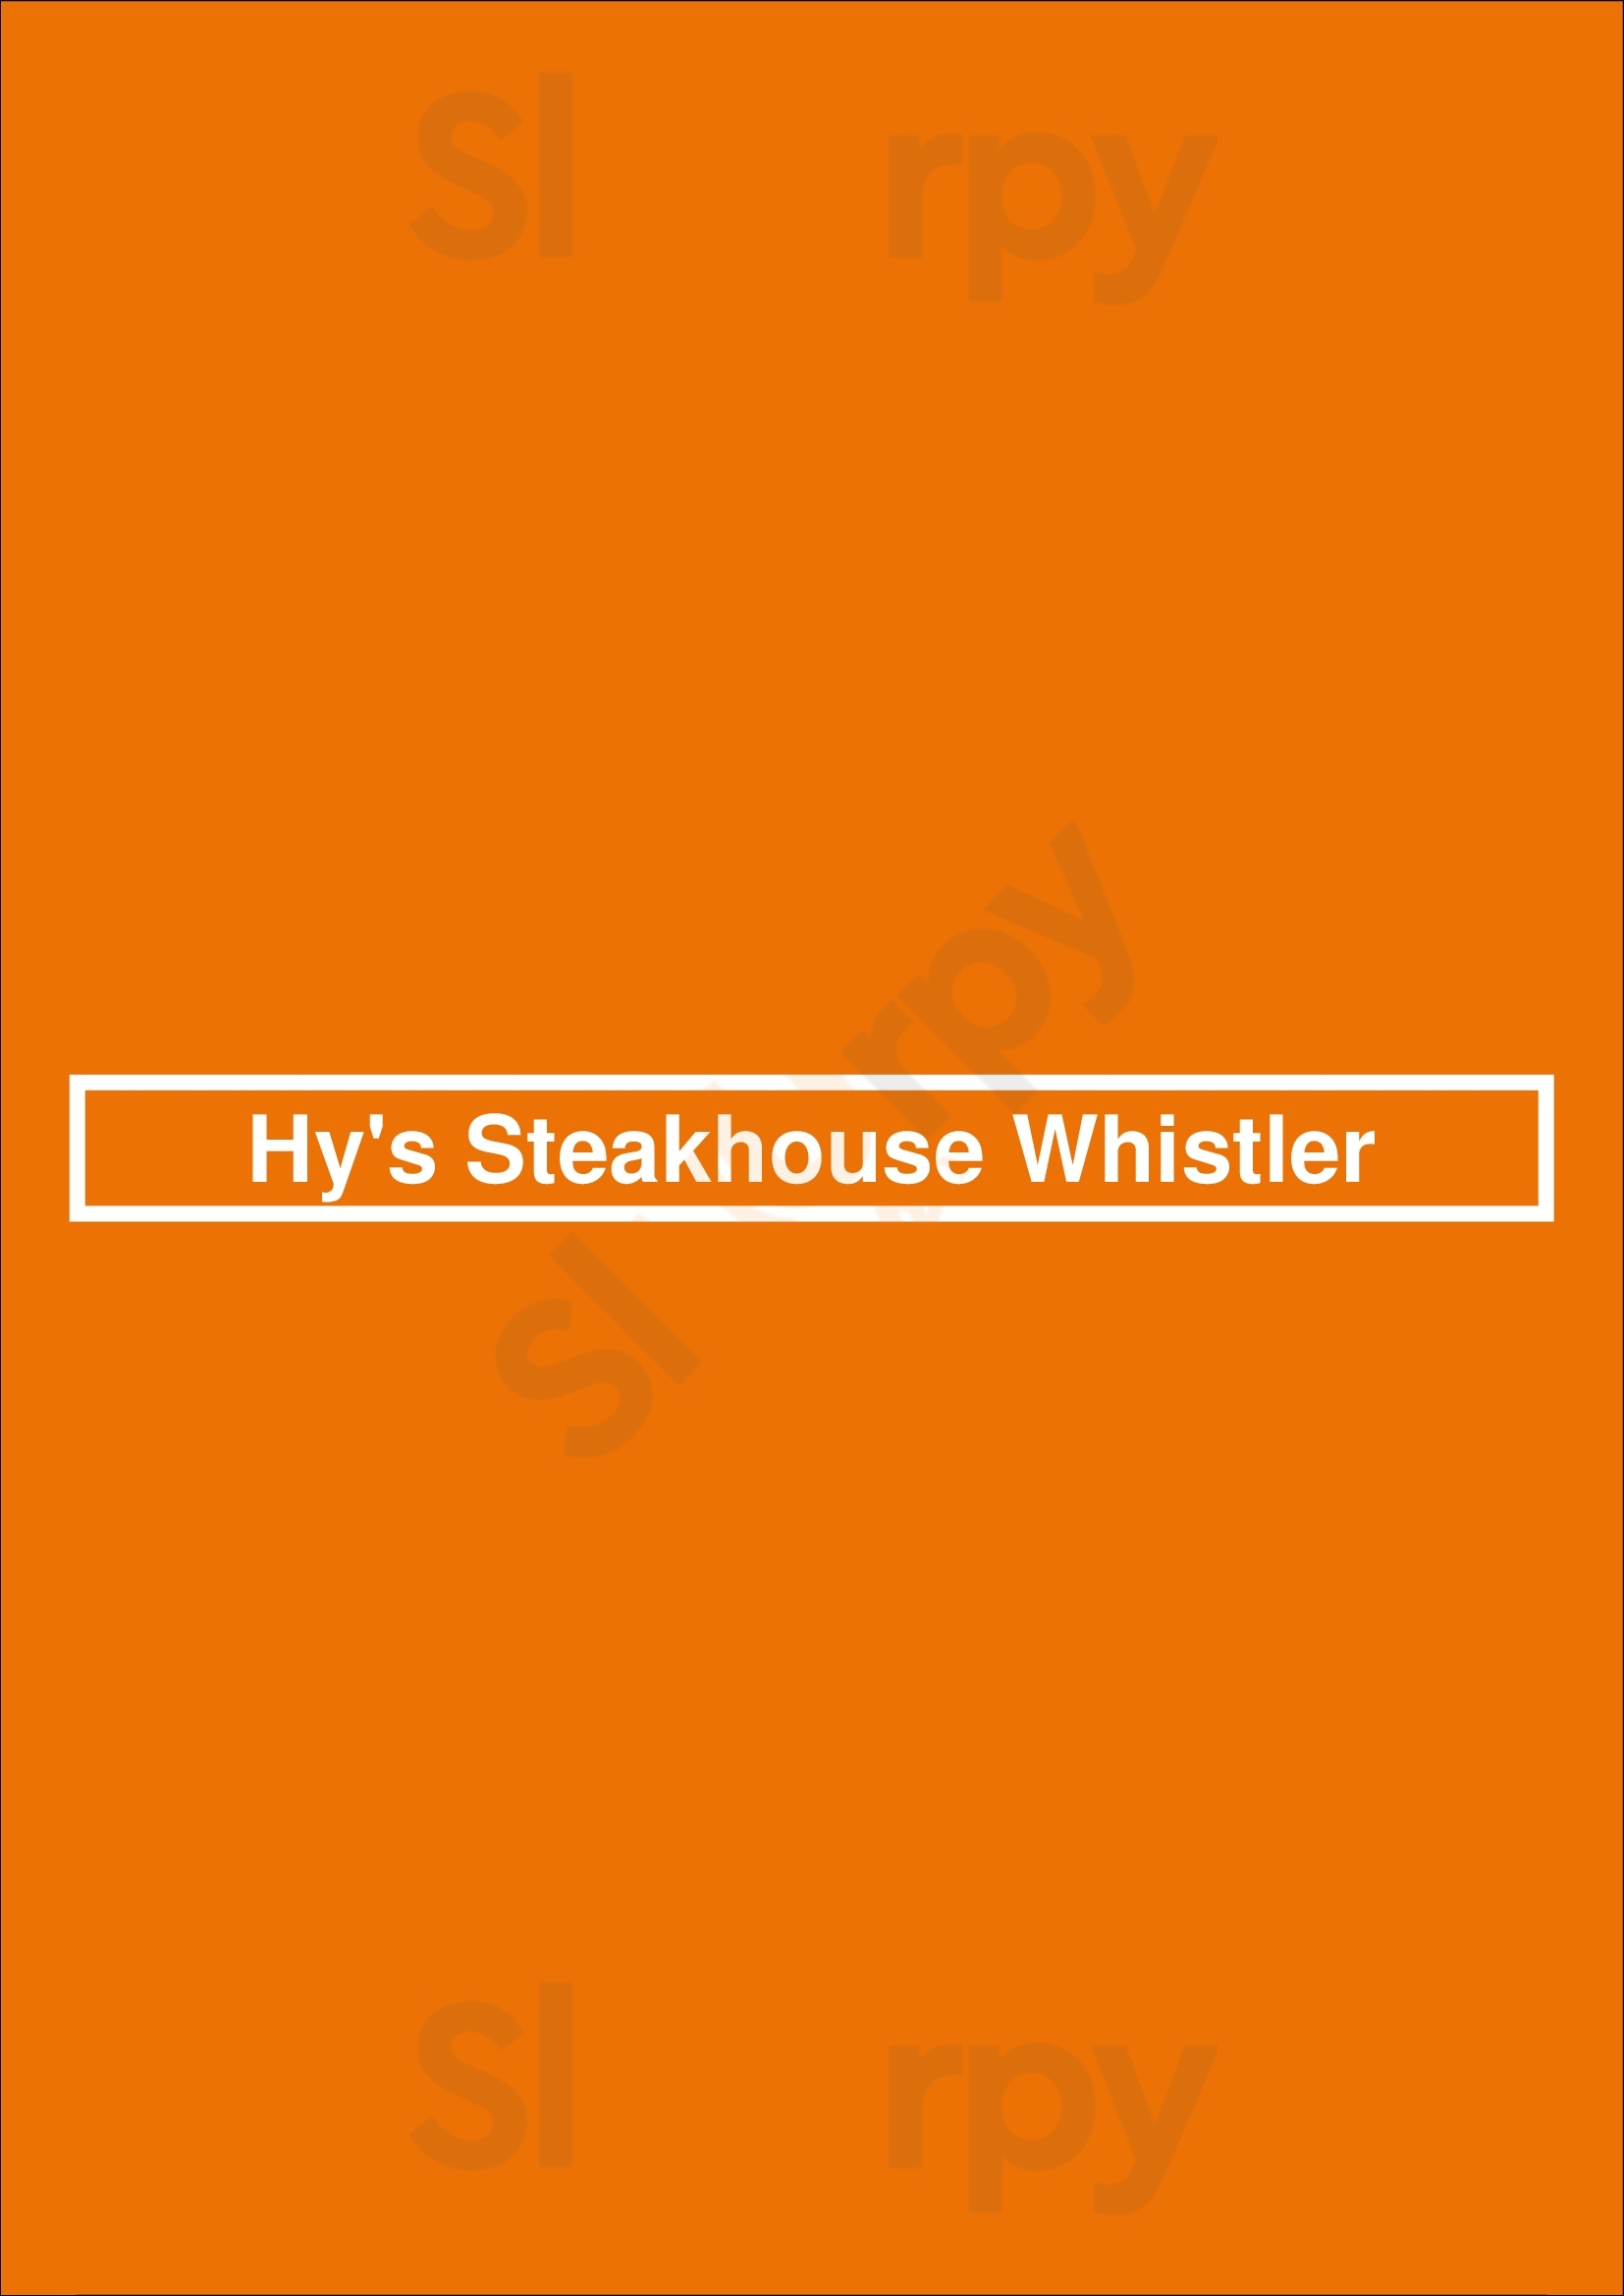 Hy's Steakhouse Whistler Whistler Menu - 1